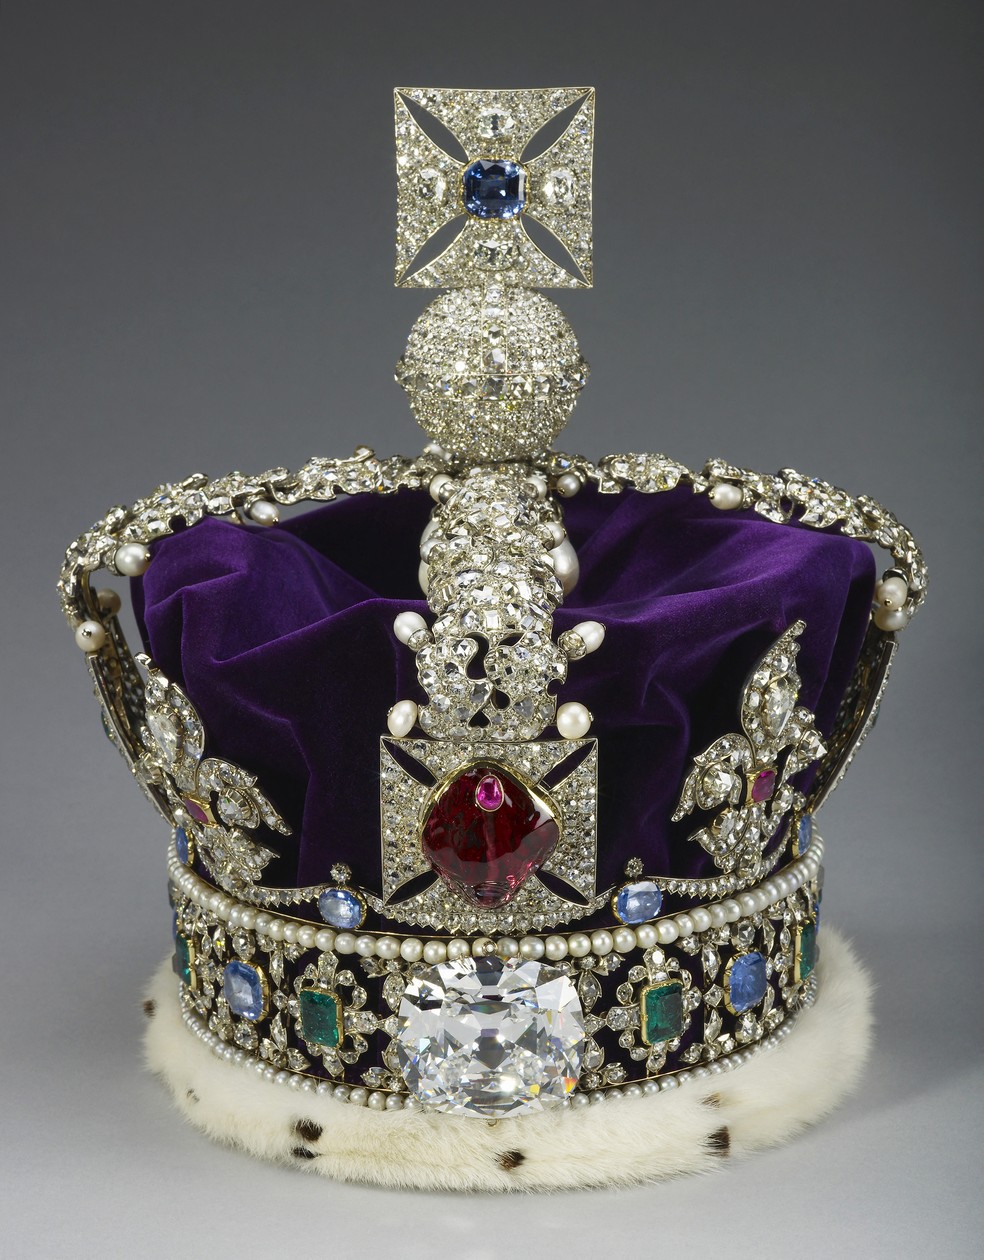 Foto sem data mostra a Coroa do Estado Imperial, que vai ser usada pelo rei Charles III após a coroação, marcada para 6 de maio de 2023 — Foto: Divulgação/Palácio de Buckingham via AFP